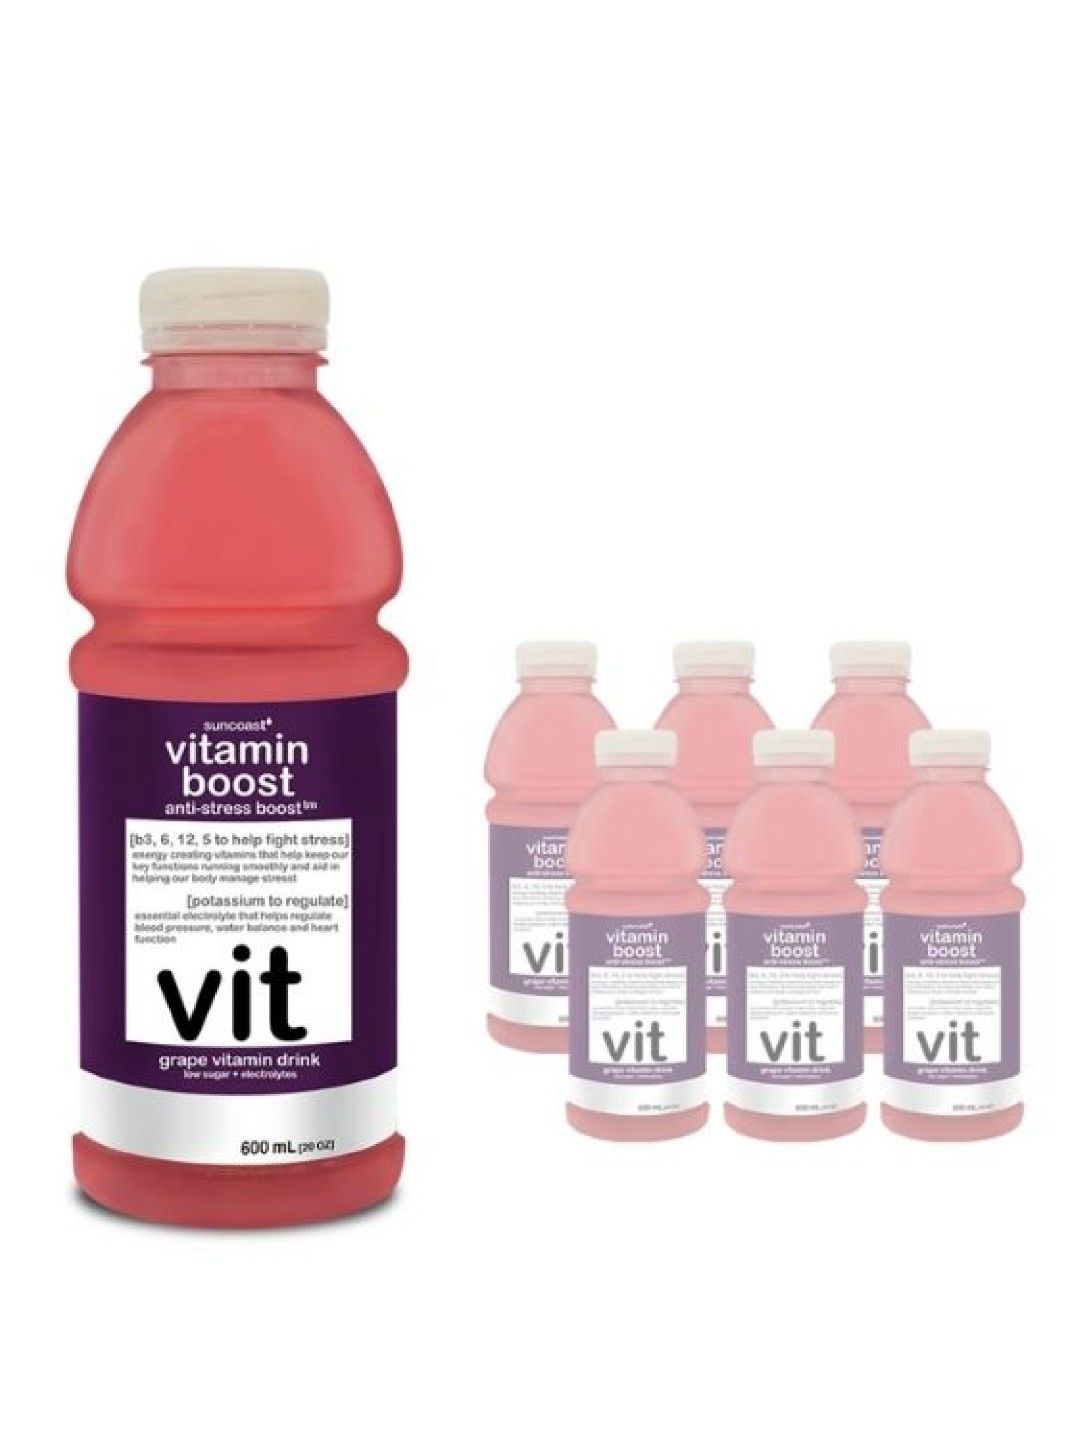 Vitamin Boost Anti-Stress Boost Grape Vitamin Drink (600ml) (6-pack)